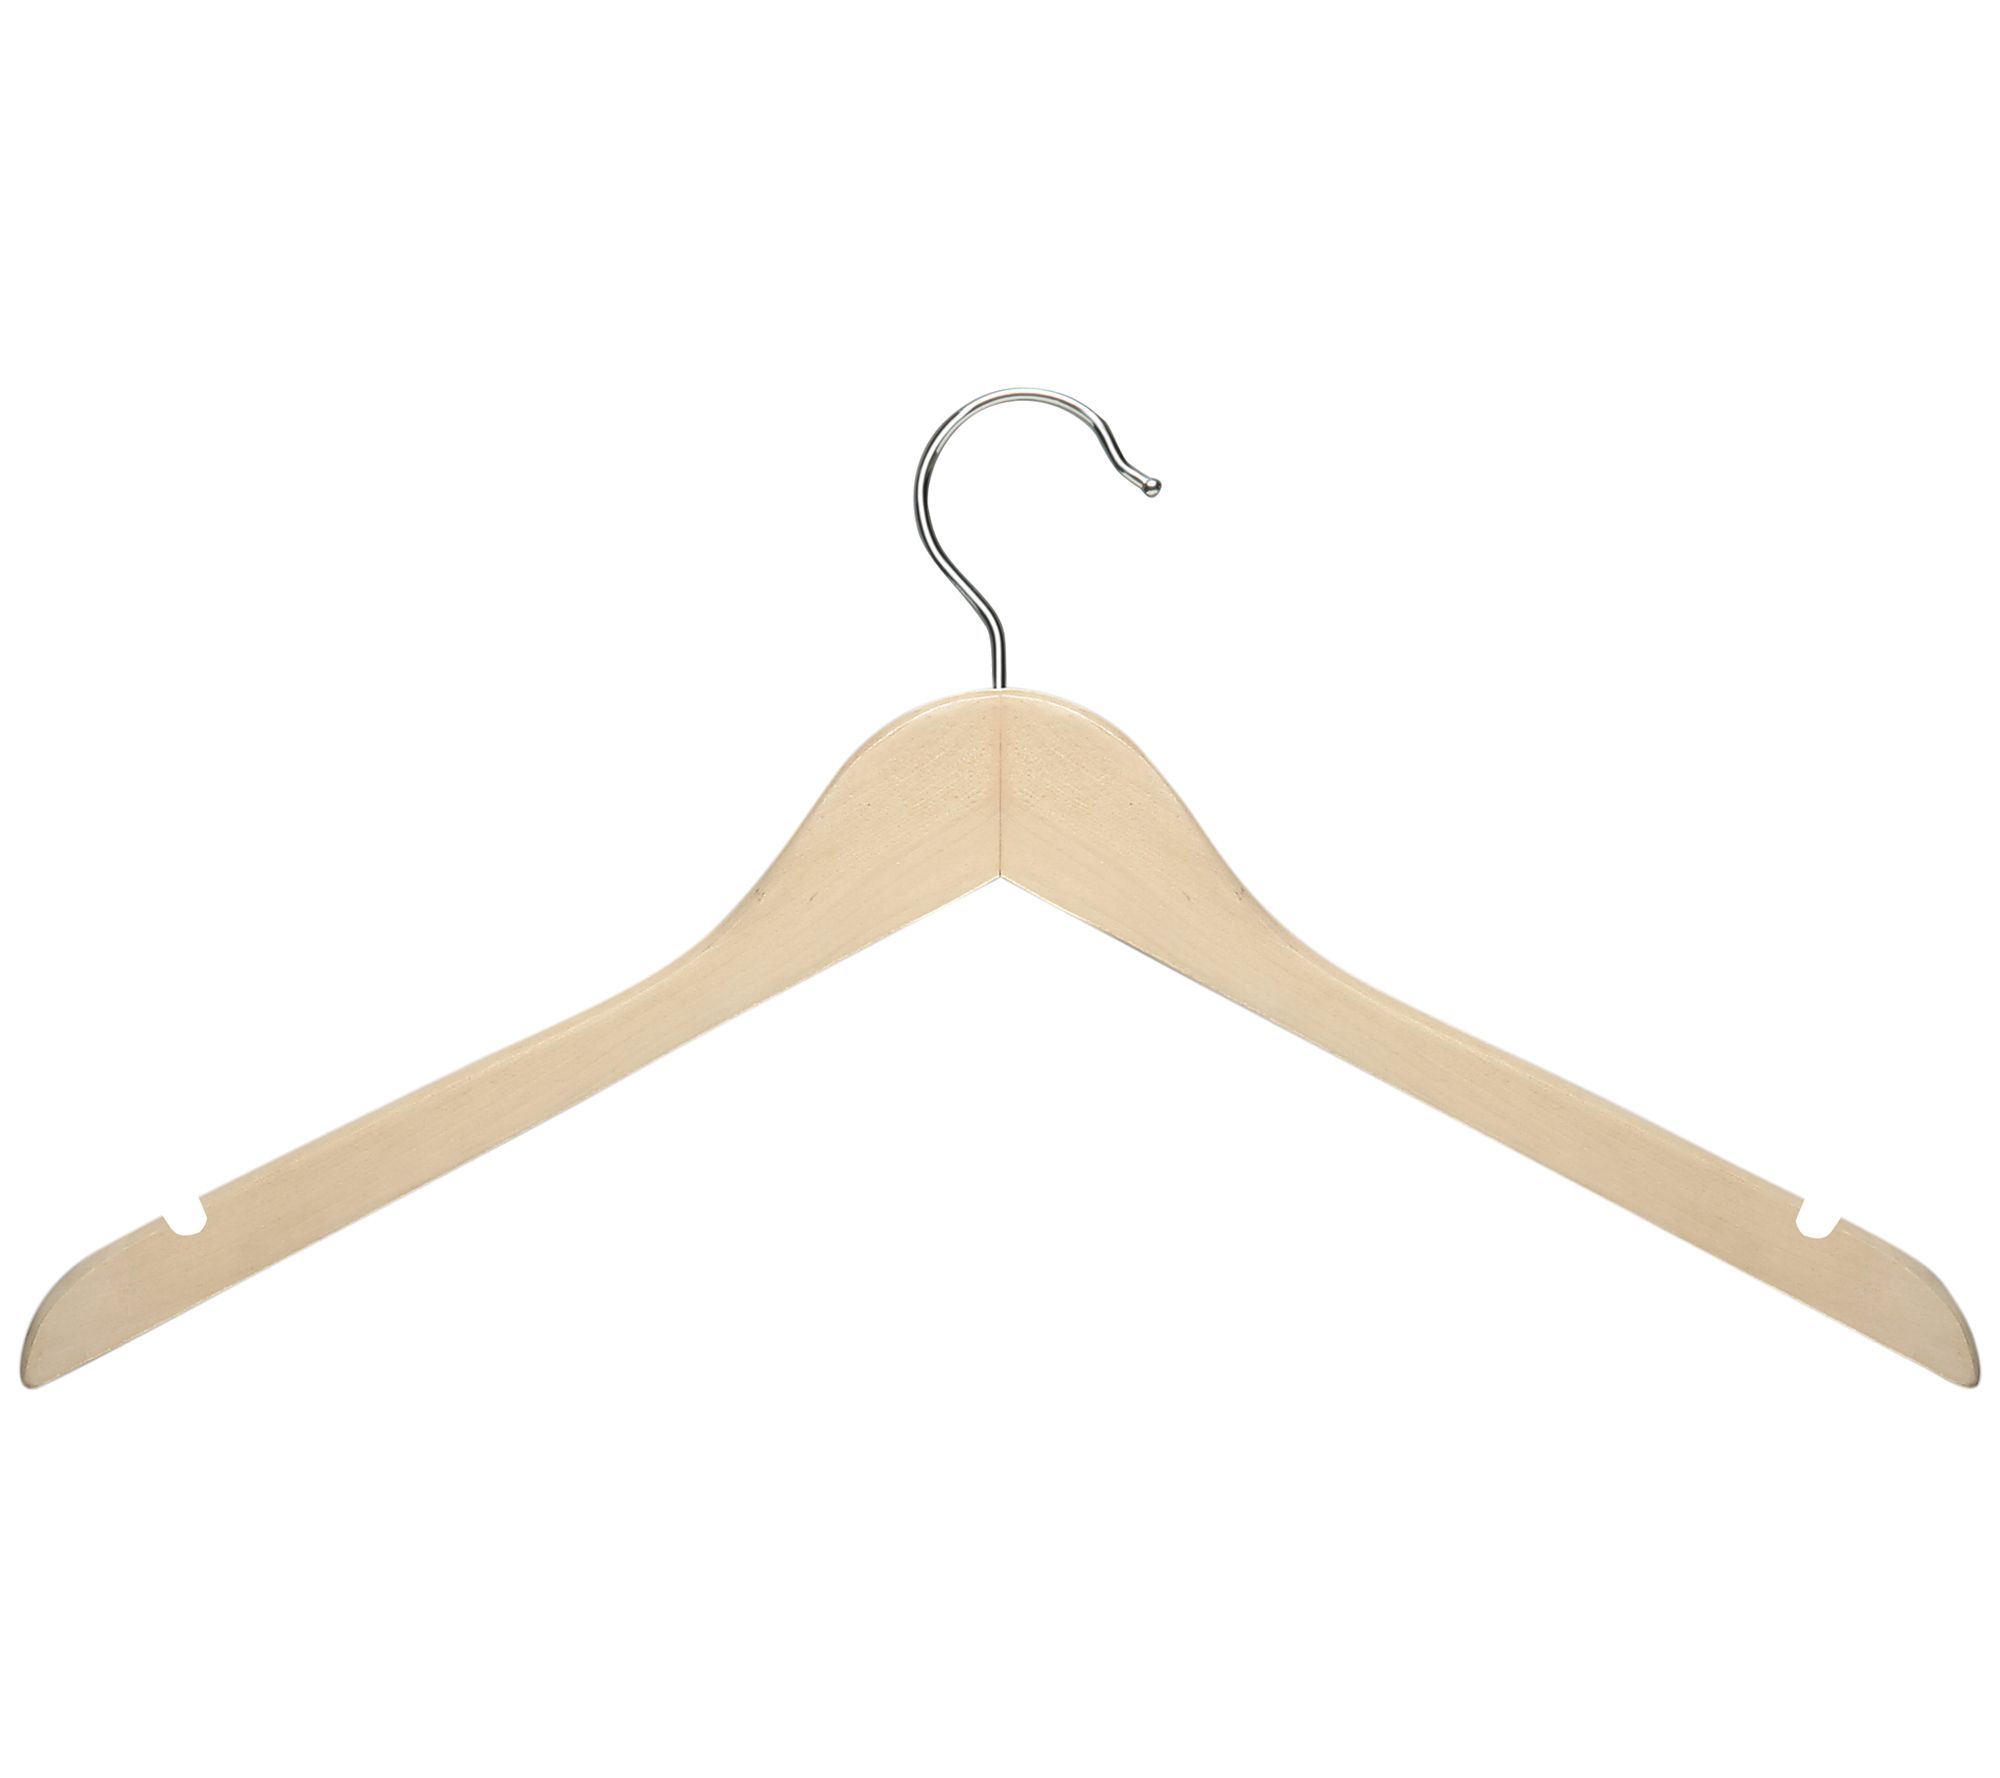 Honey-Can-Do Black Set of 5 Collapsible Hangers and 50 Velvet Non-Slip Hangers